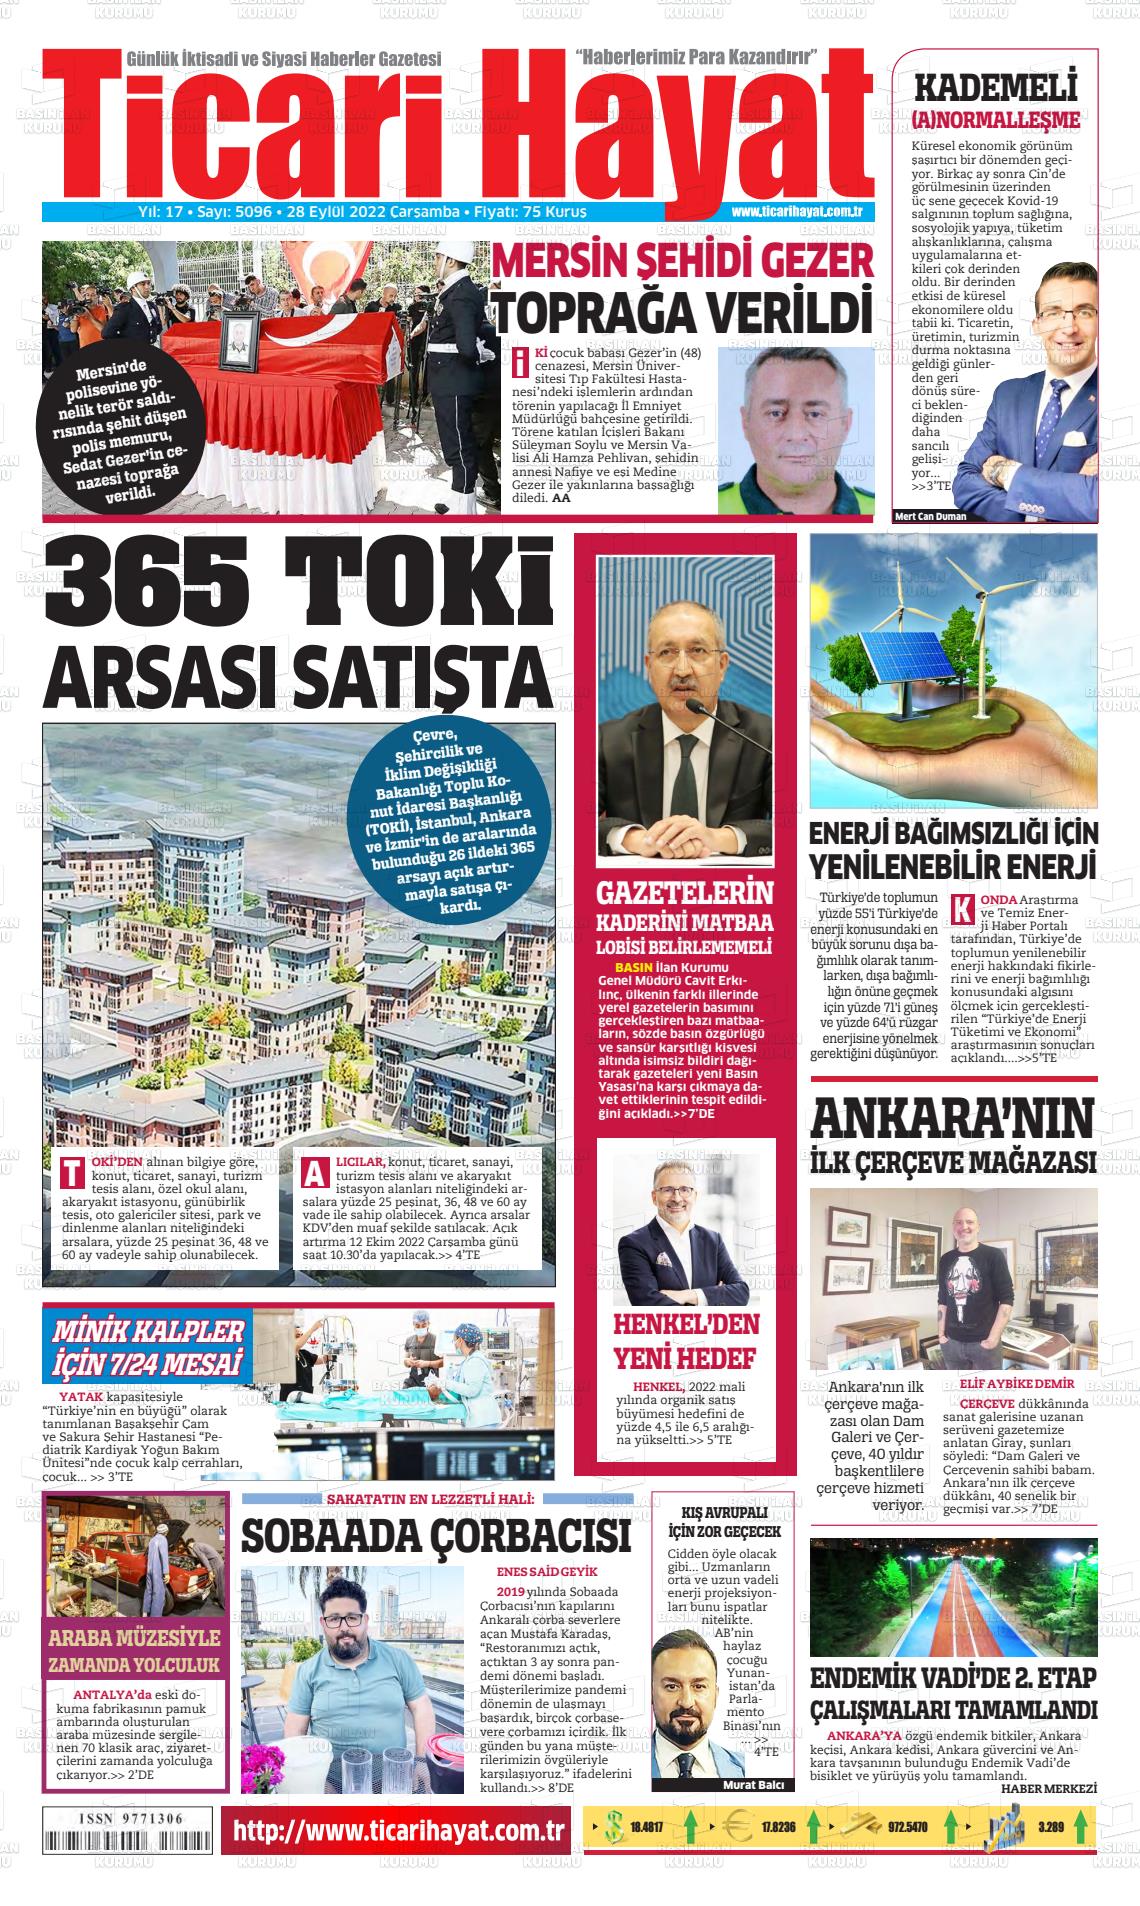 28 Eylül 2022 Ticari Hayat Gazete Manşeti